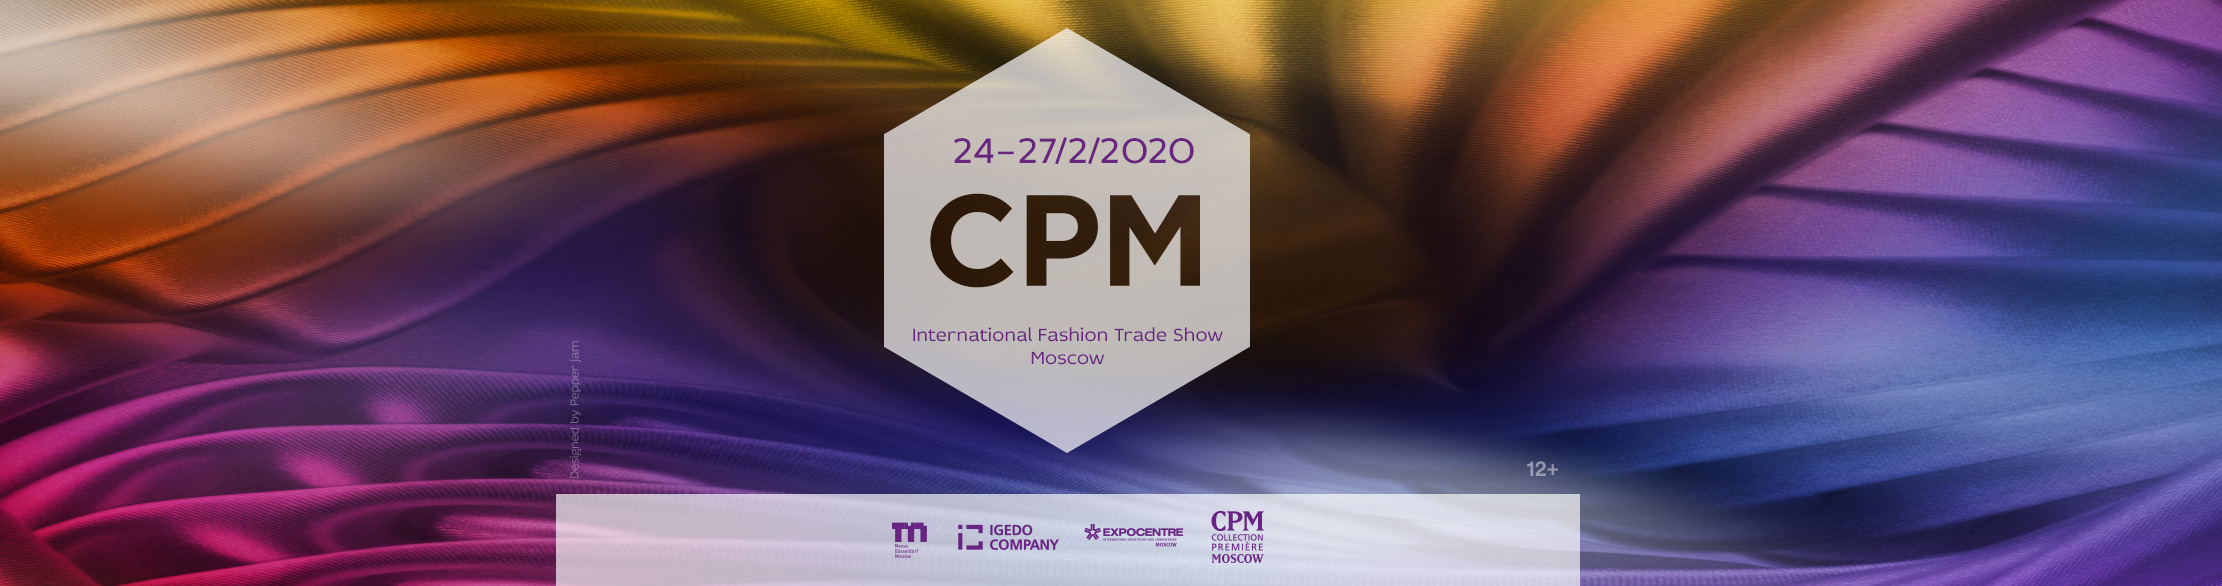 CPM Mosca 2020